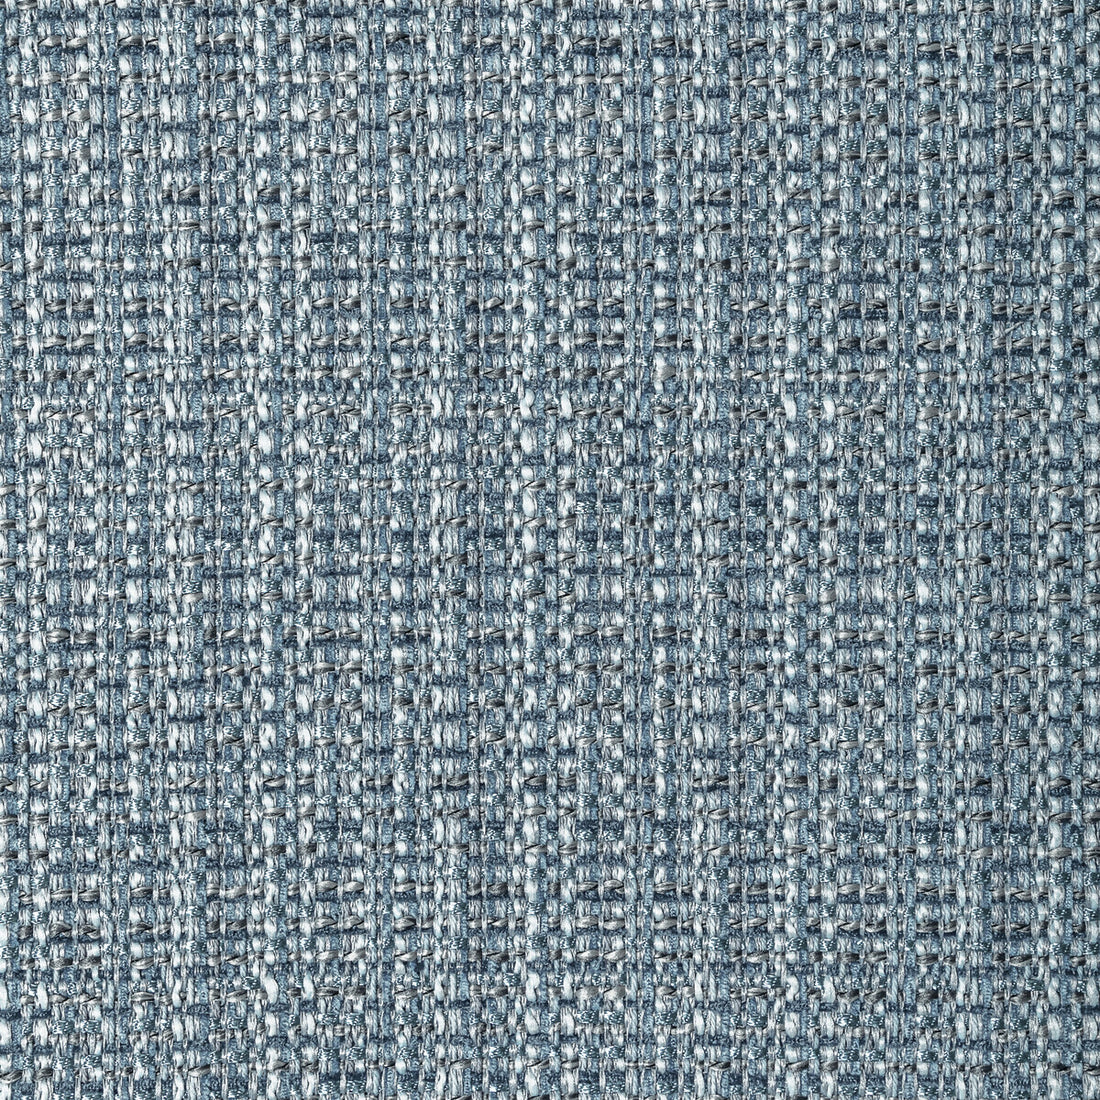 Kravet Design fabric in 34210-5 color - pattern 34210.5.0 - by Kravet Design